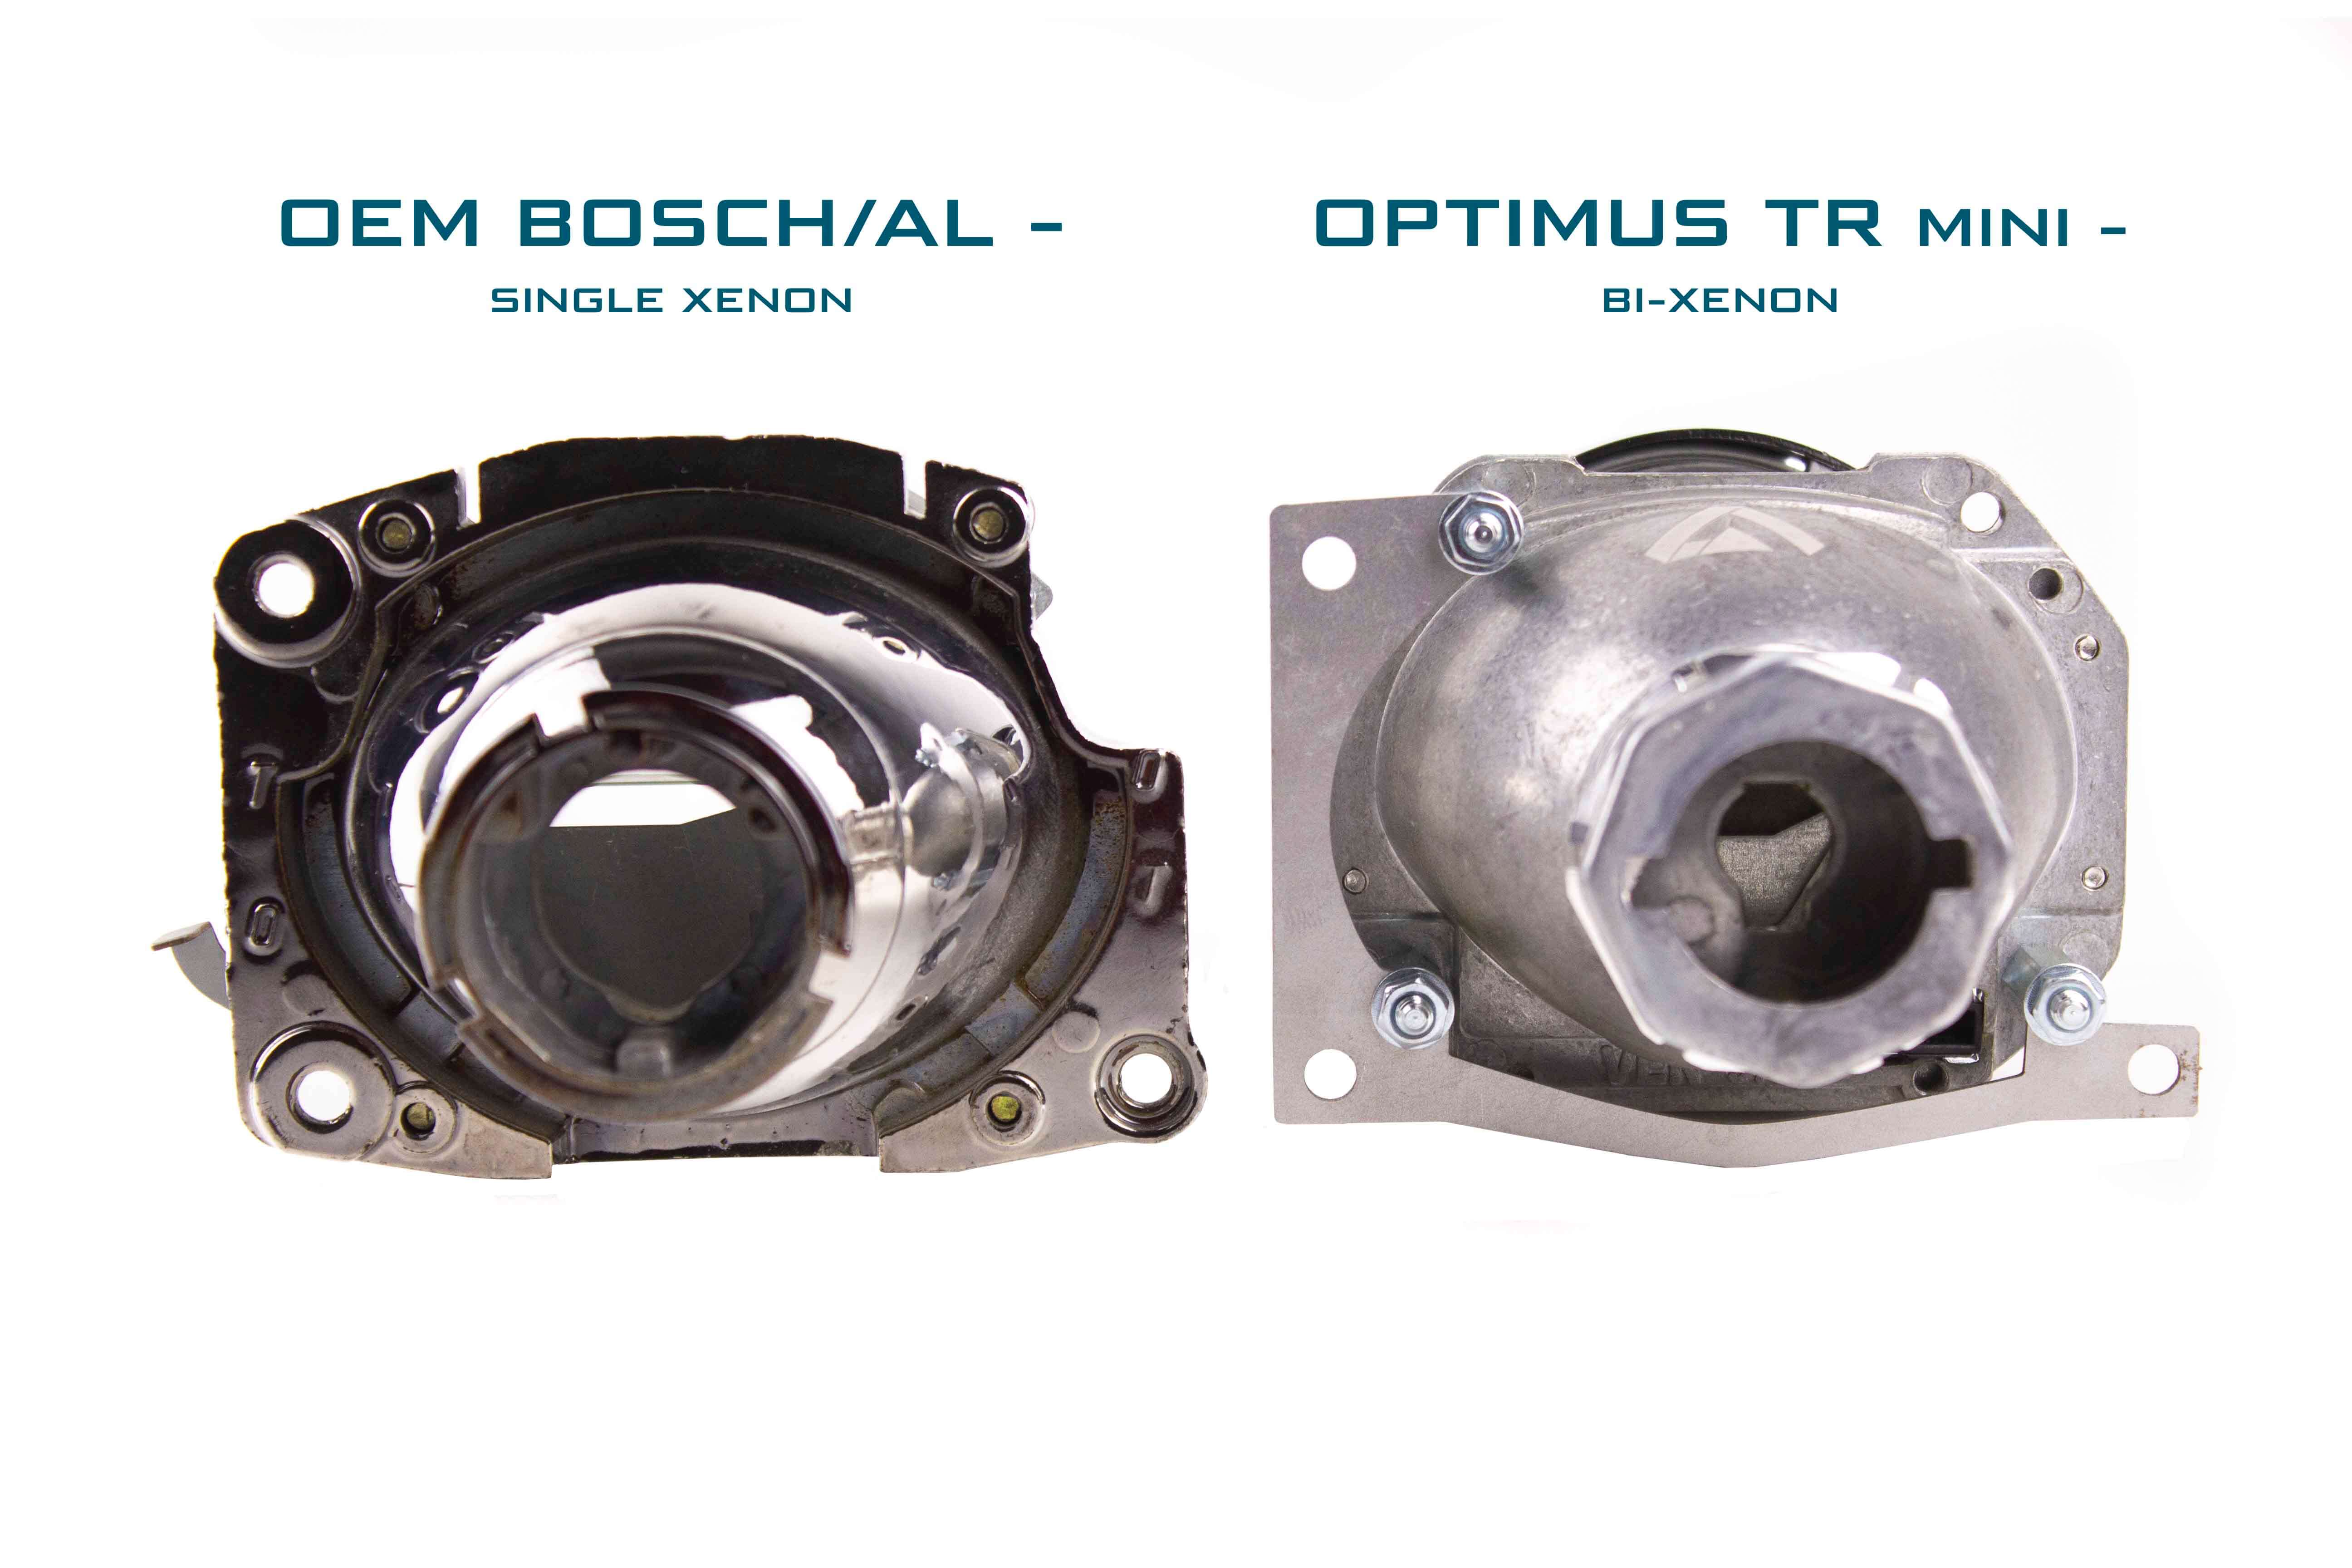 BMW 3 E46 98-05 bi-xenon headlight repair & upgrade kit for Bosch/AL Single xenon headlights